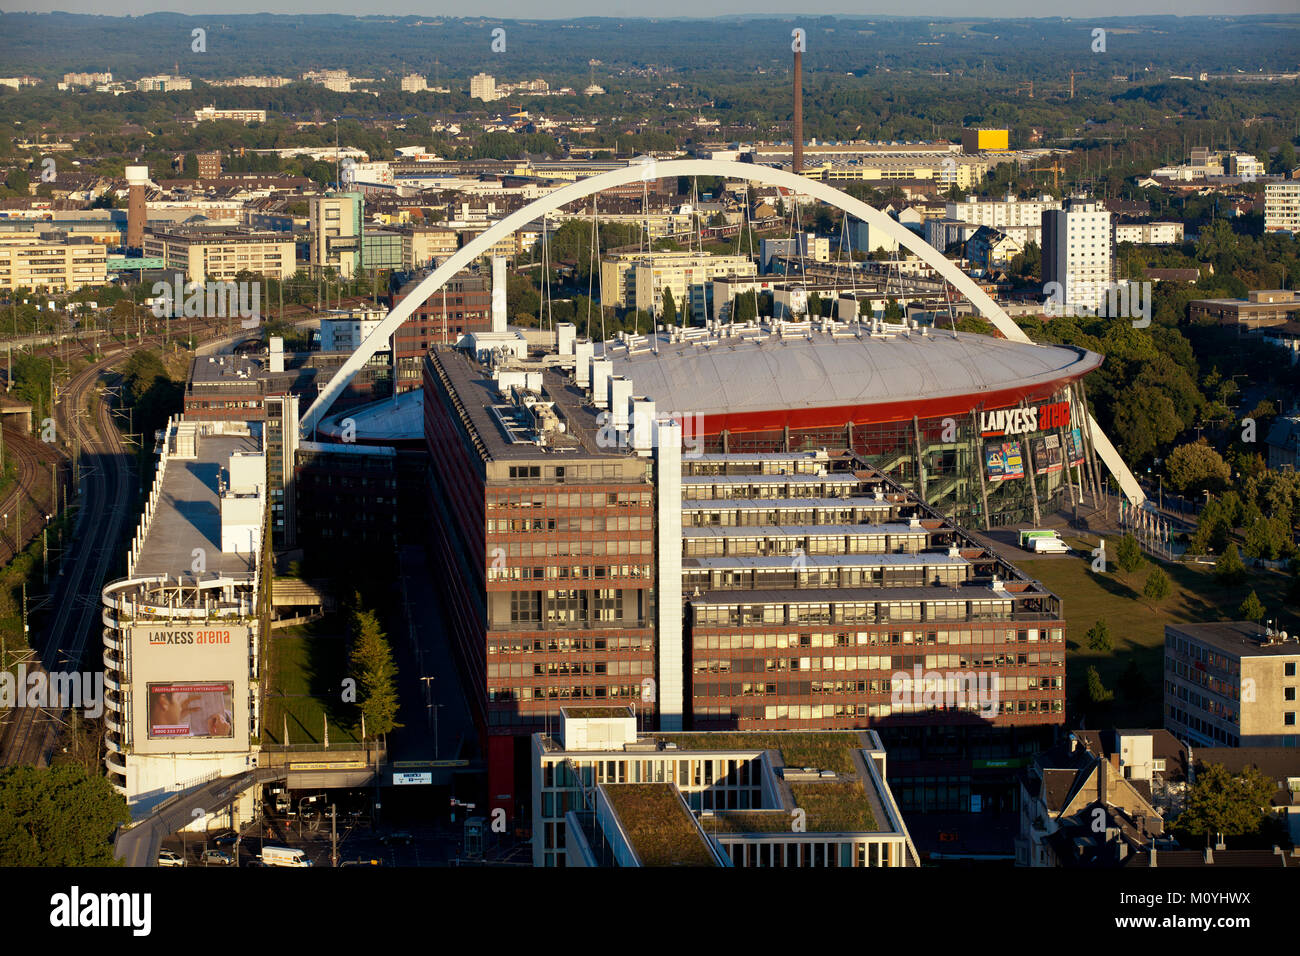 Germania, Colonia, vista dalla torre del triangolo nel quartiere Deutz per la Lanxess Arena precedentemente noto come Koeln Arena, di fronte al municipio. Foto Stock